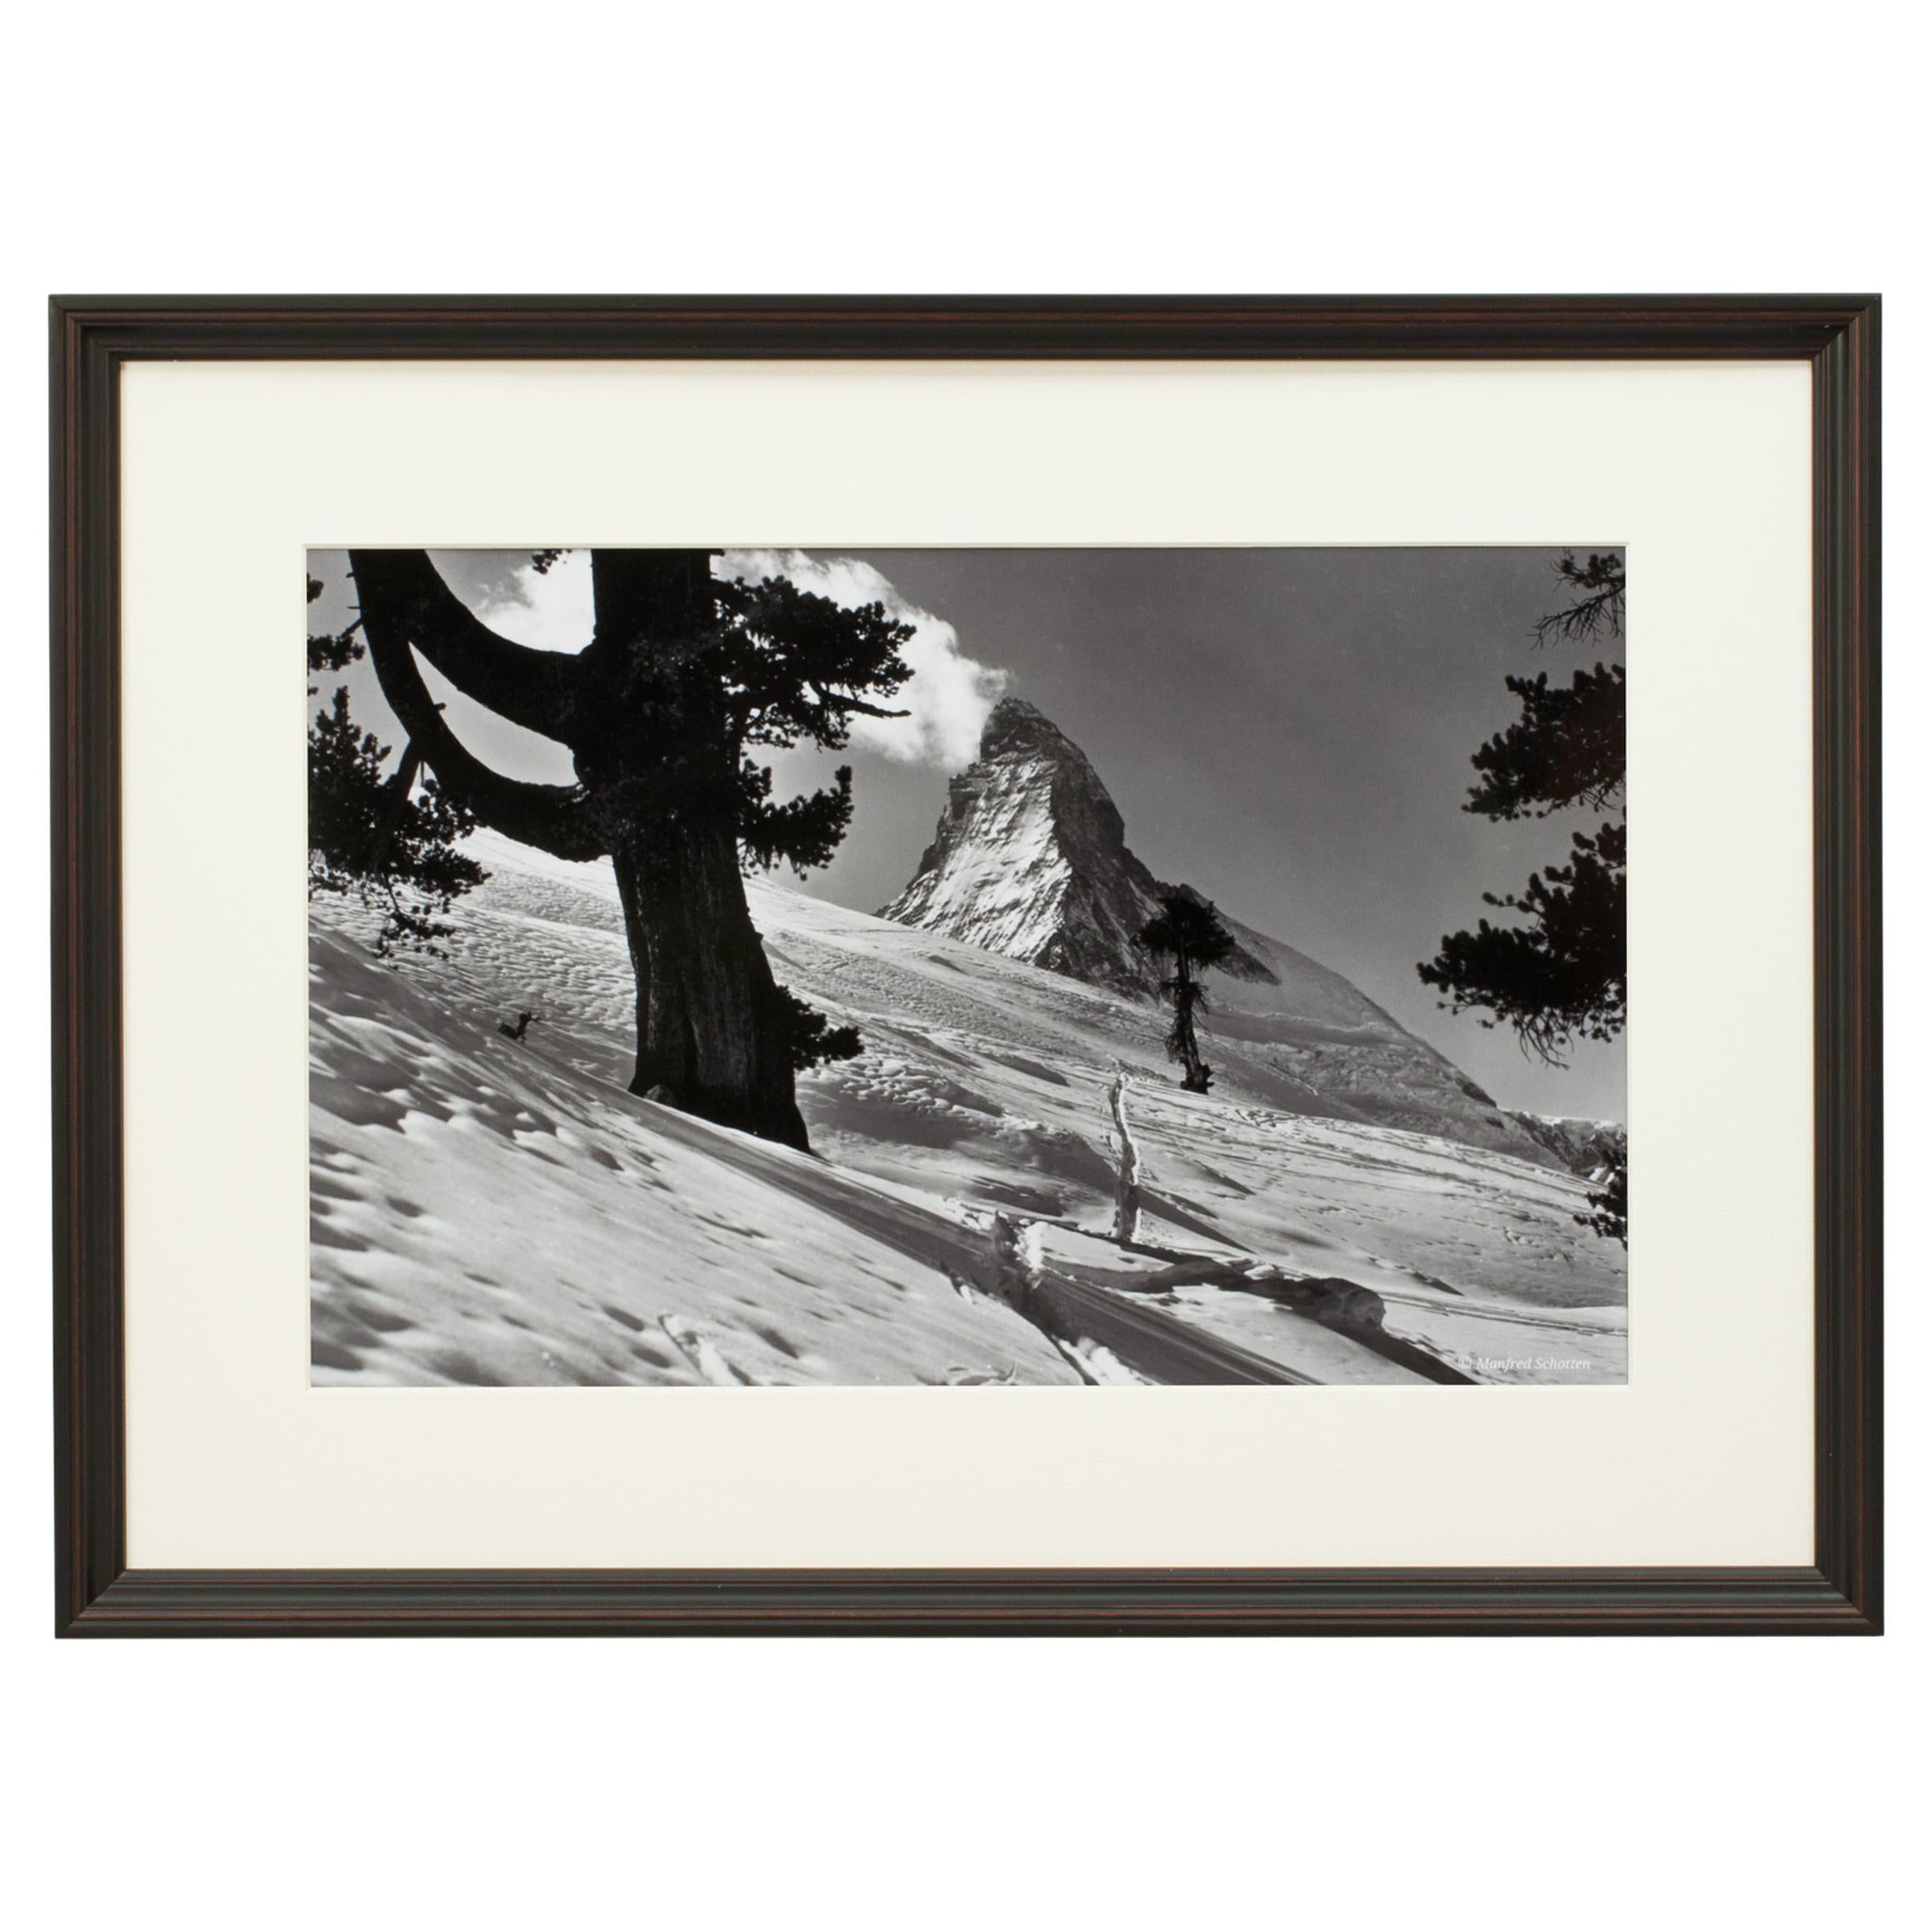 Vintage Style Ski Photography, Framed Alpine Ski Photograph, Zermatt, Riffelalp